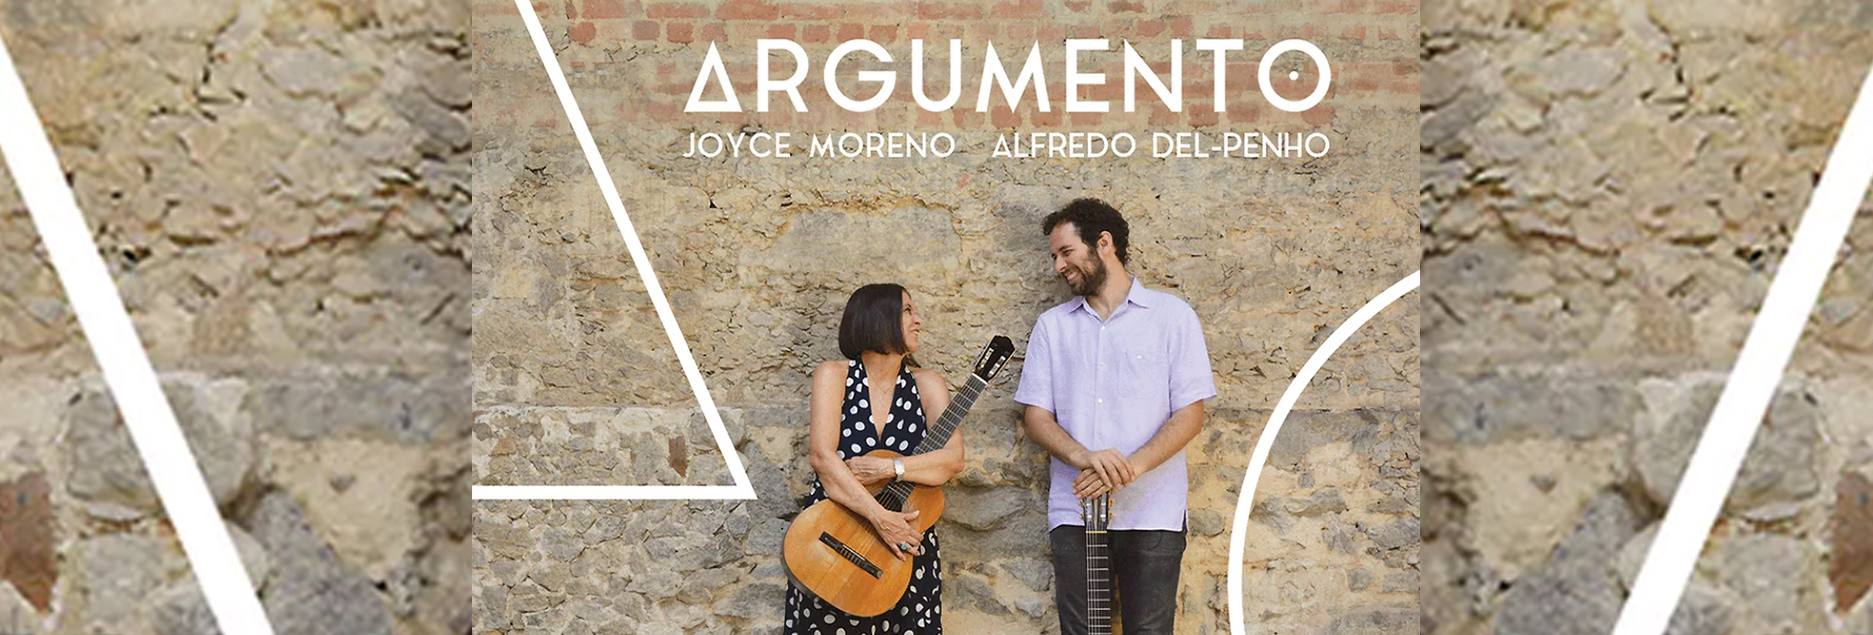 Joyce e Alfredo Del Penho reafirmam a grandeza de Sidney Miller em “Argumento”